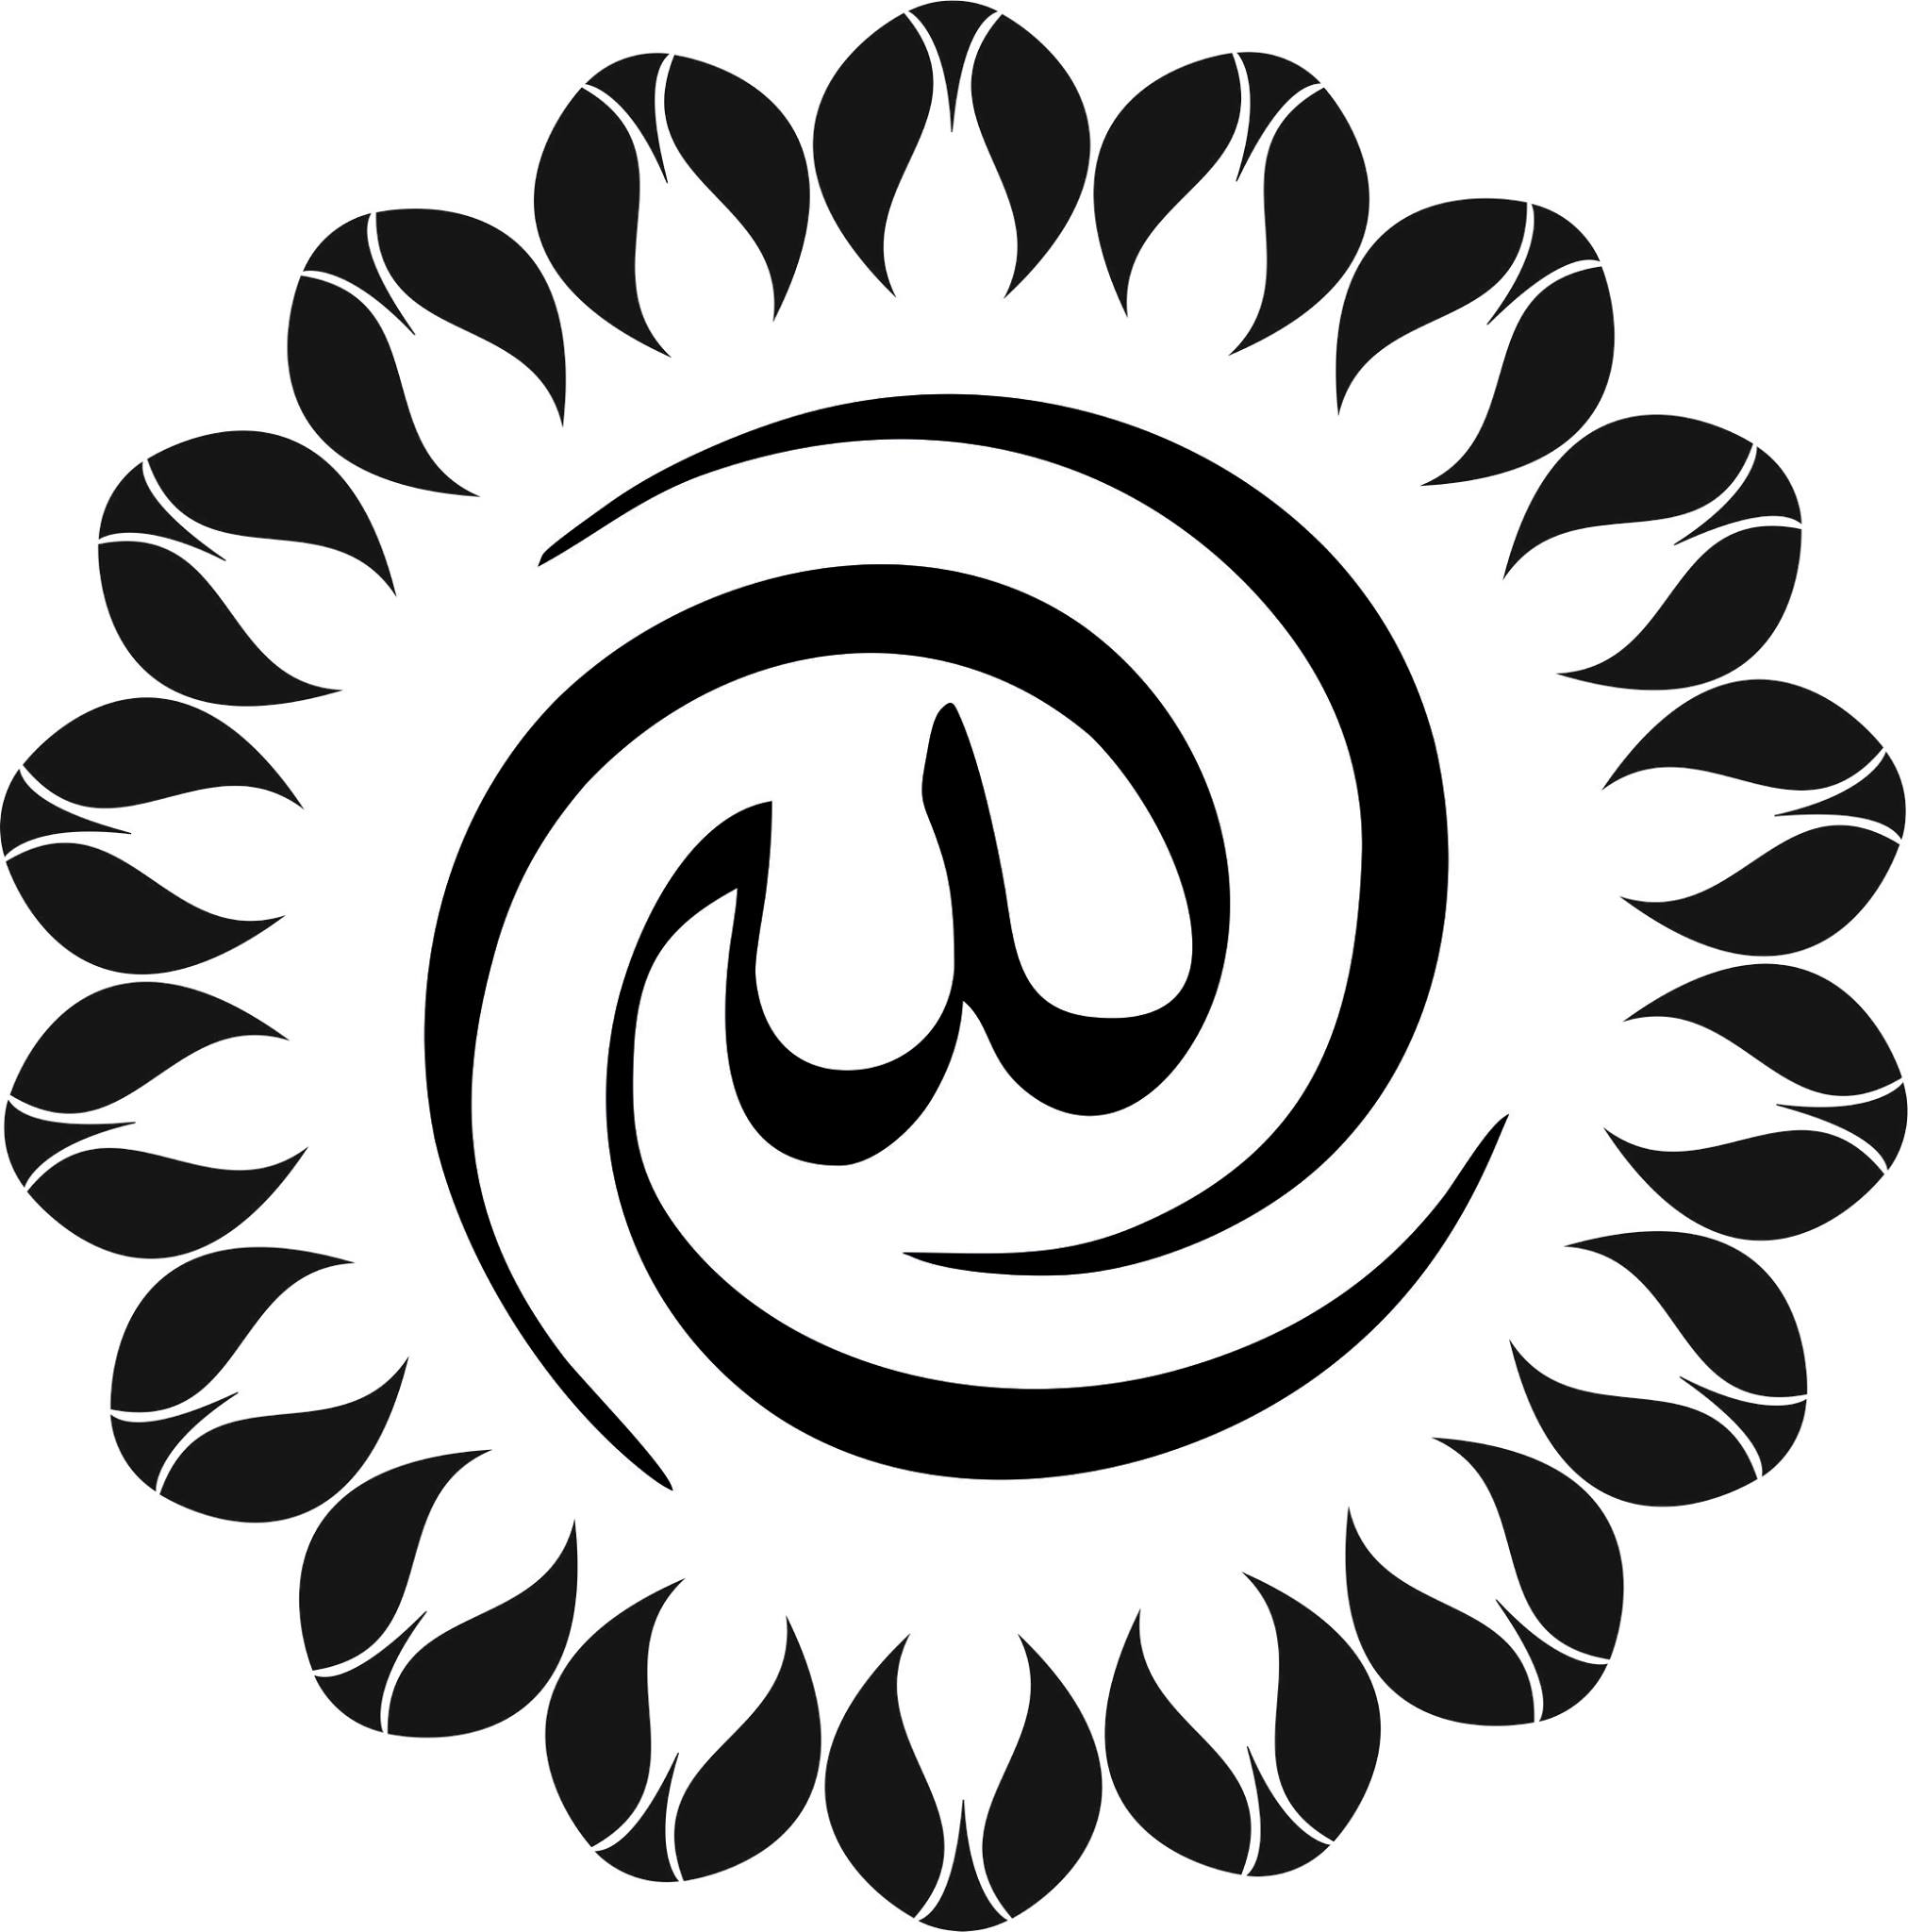 Аллах в арабской каллиграфии векторной графики jpg Изображение